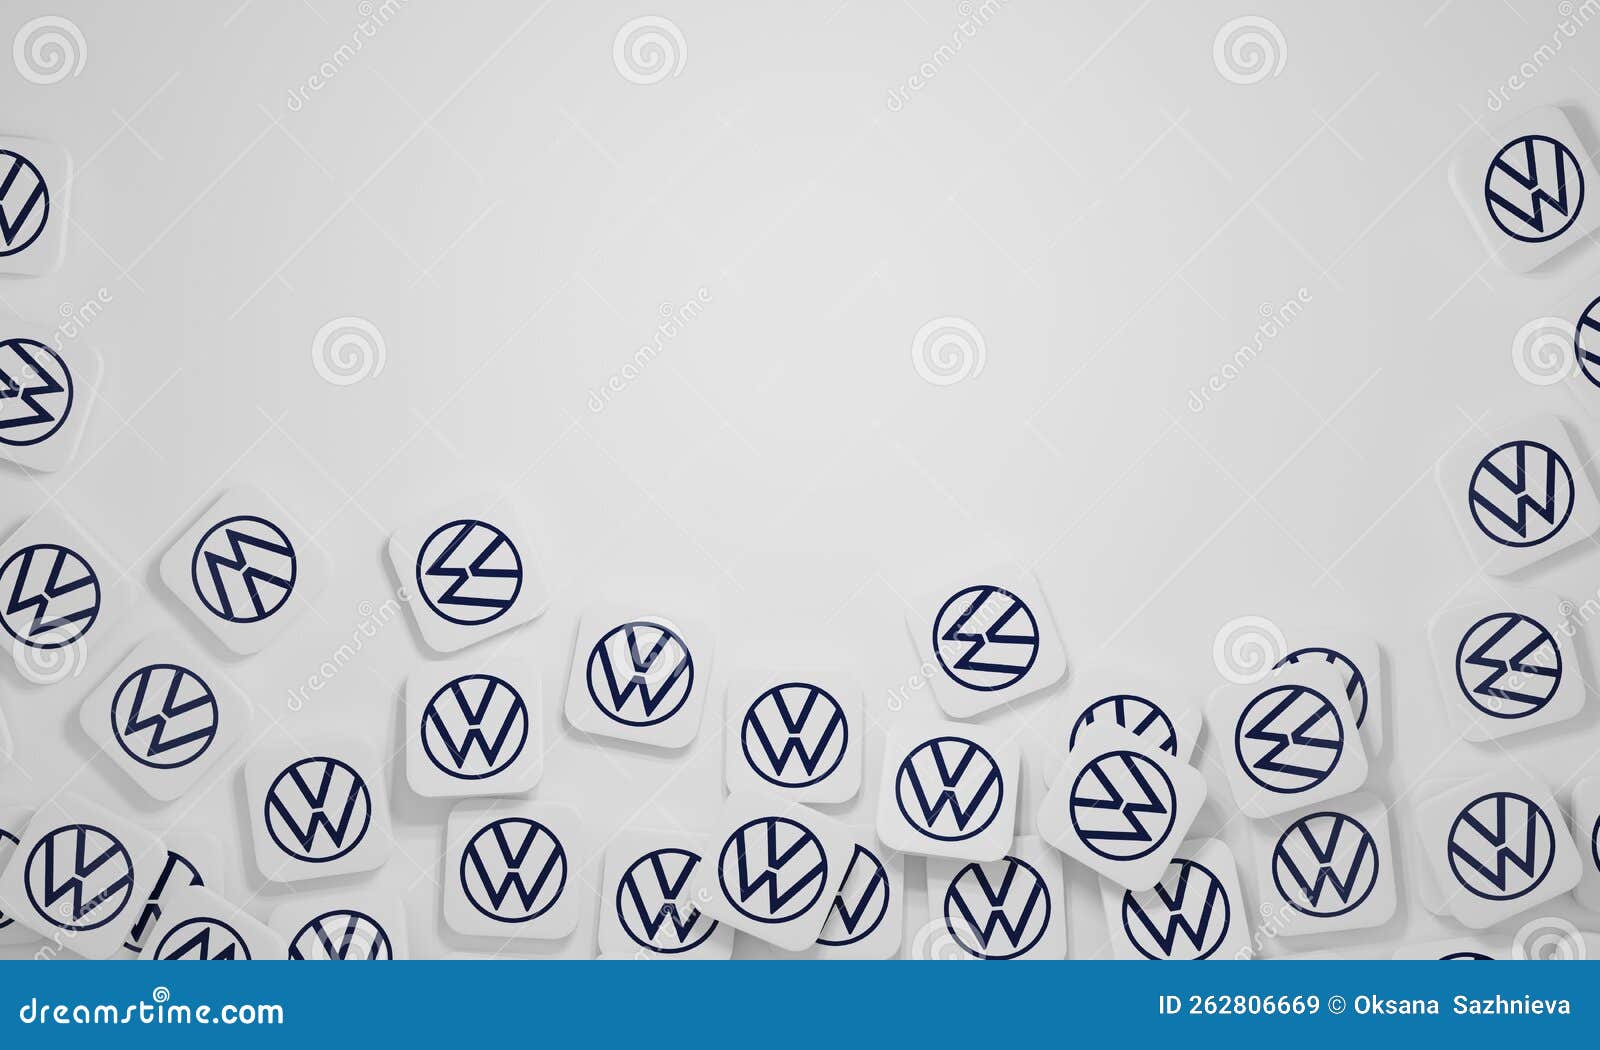 Volkswagen Logo Stock Illustrations – 298 Volkswagen Logo Stock  Illustrations, Vectors & Clipart - Dreamstime